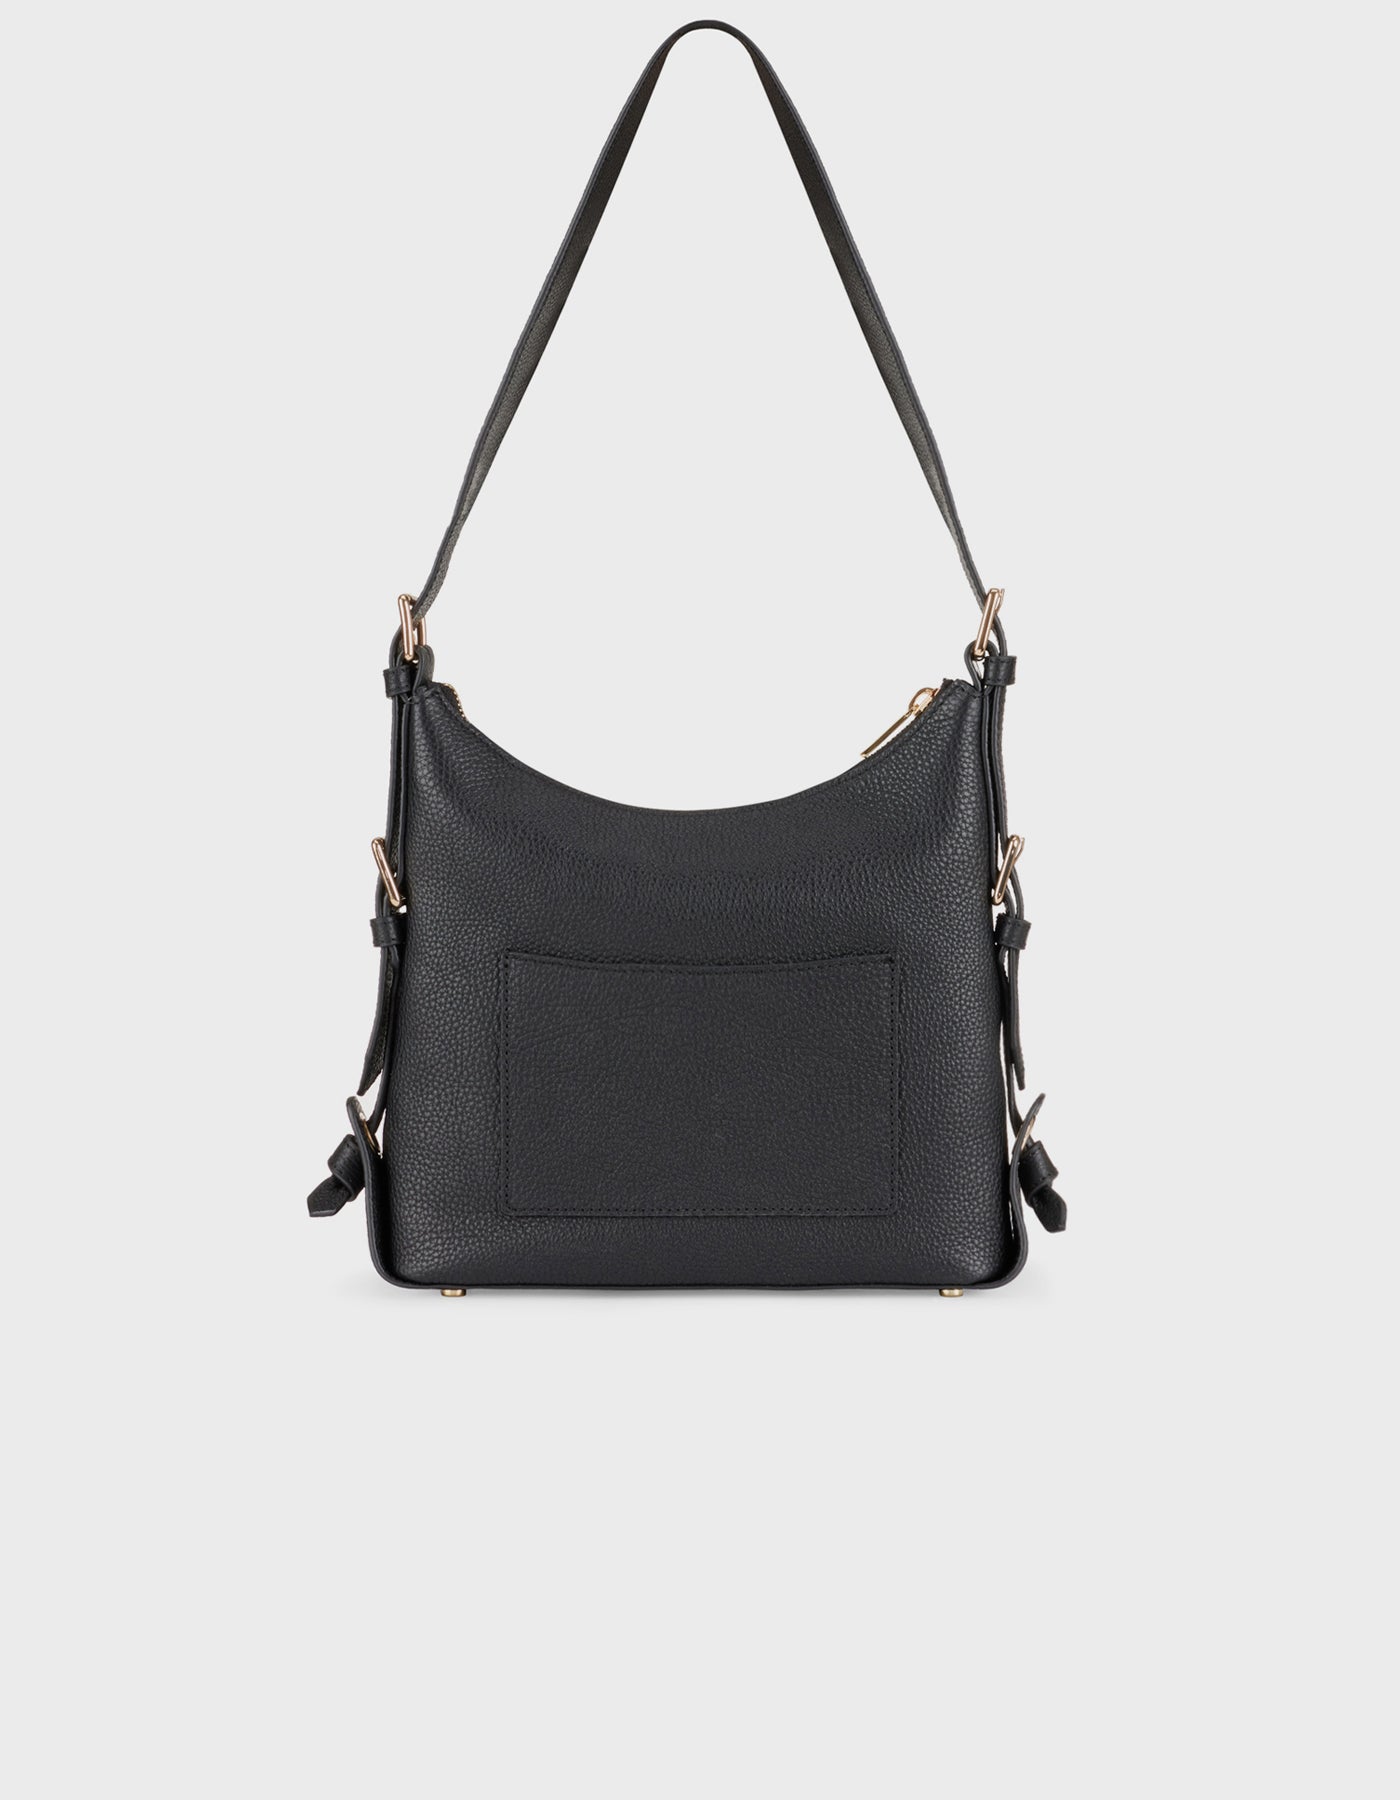 Hiva Atelier | Safari Shoulder Bag Black | Beautiful and Versatile